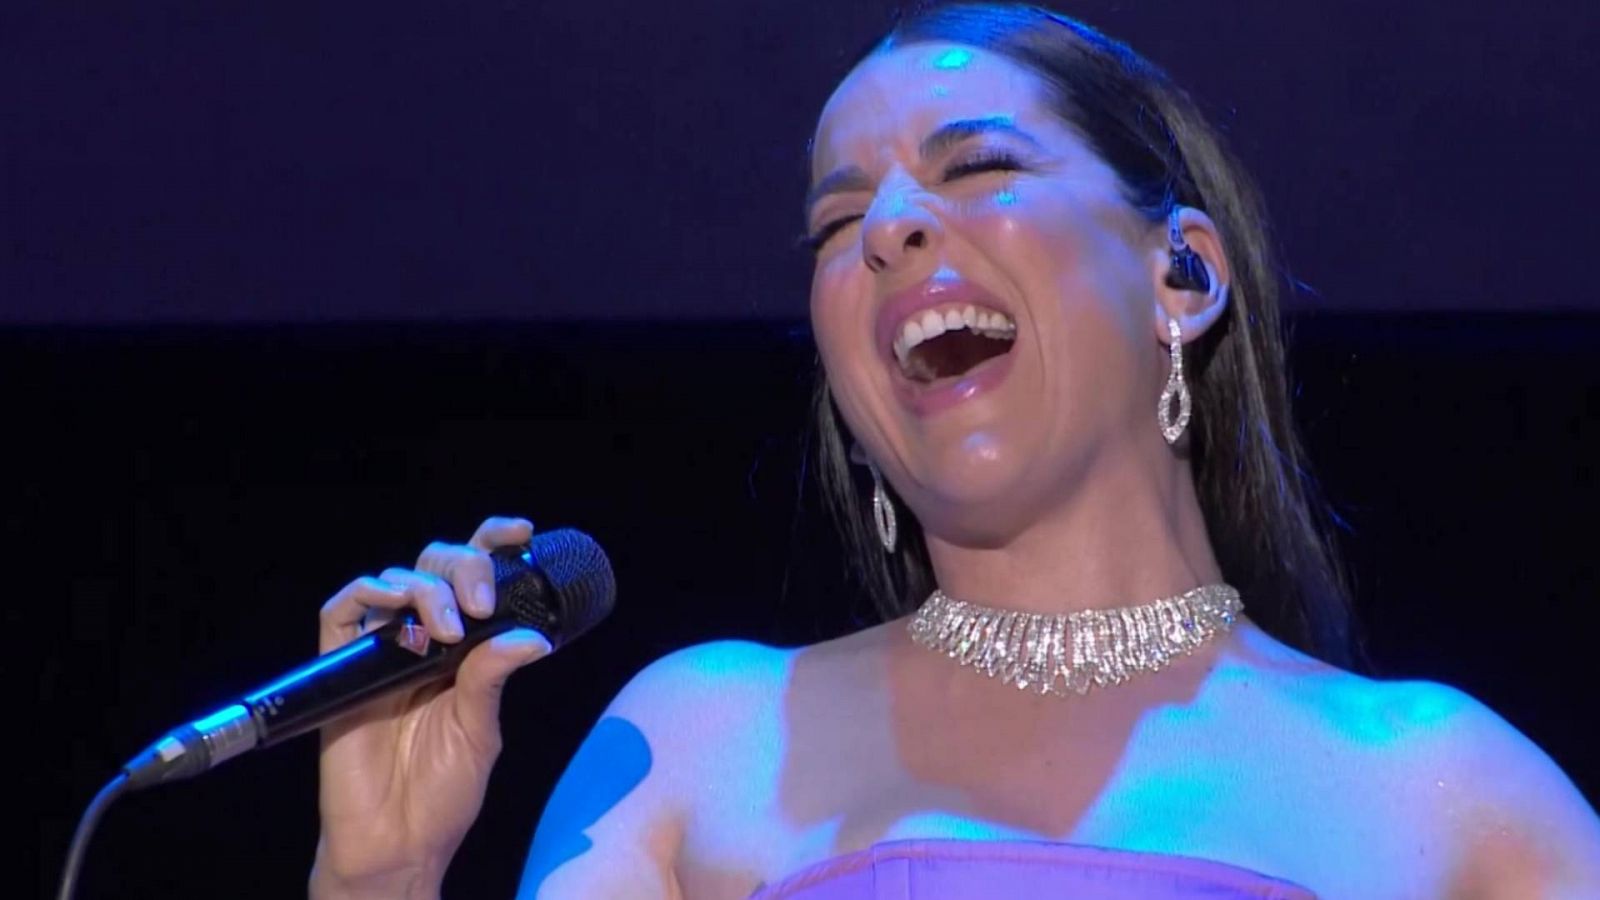 Eurovisión 2022 - Ruth Lorenzo canta "Dancing in the rain" en la despedida de Chanel